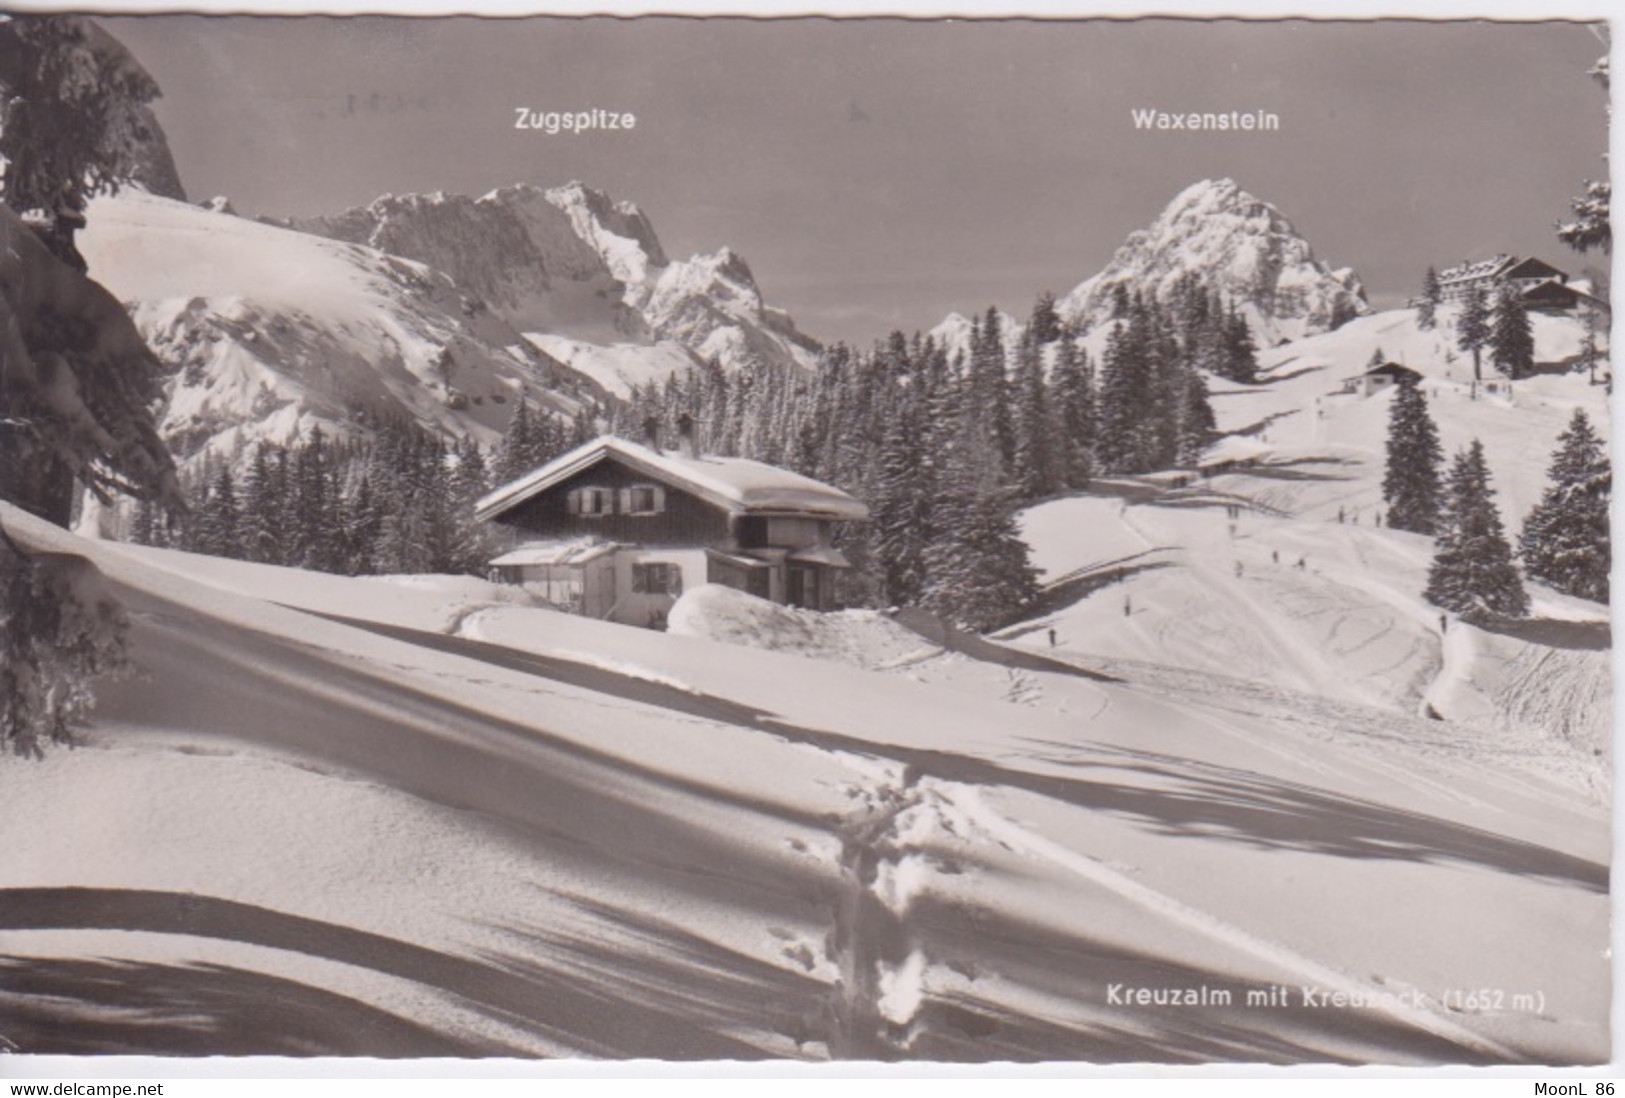 ALLEMAGNE - DEUTSCHLAND - Garmisch-Partenkirchen -  Zugspitze WAXENSTEIN - KREUZALM MIT KREUZECK - 1955 DEUTSCHE POST - Rhön